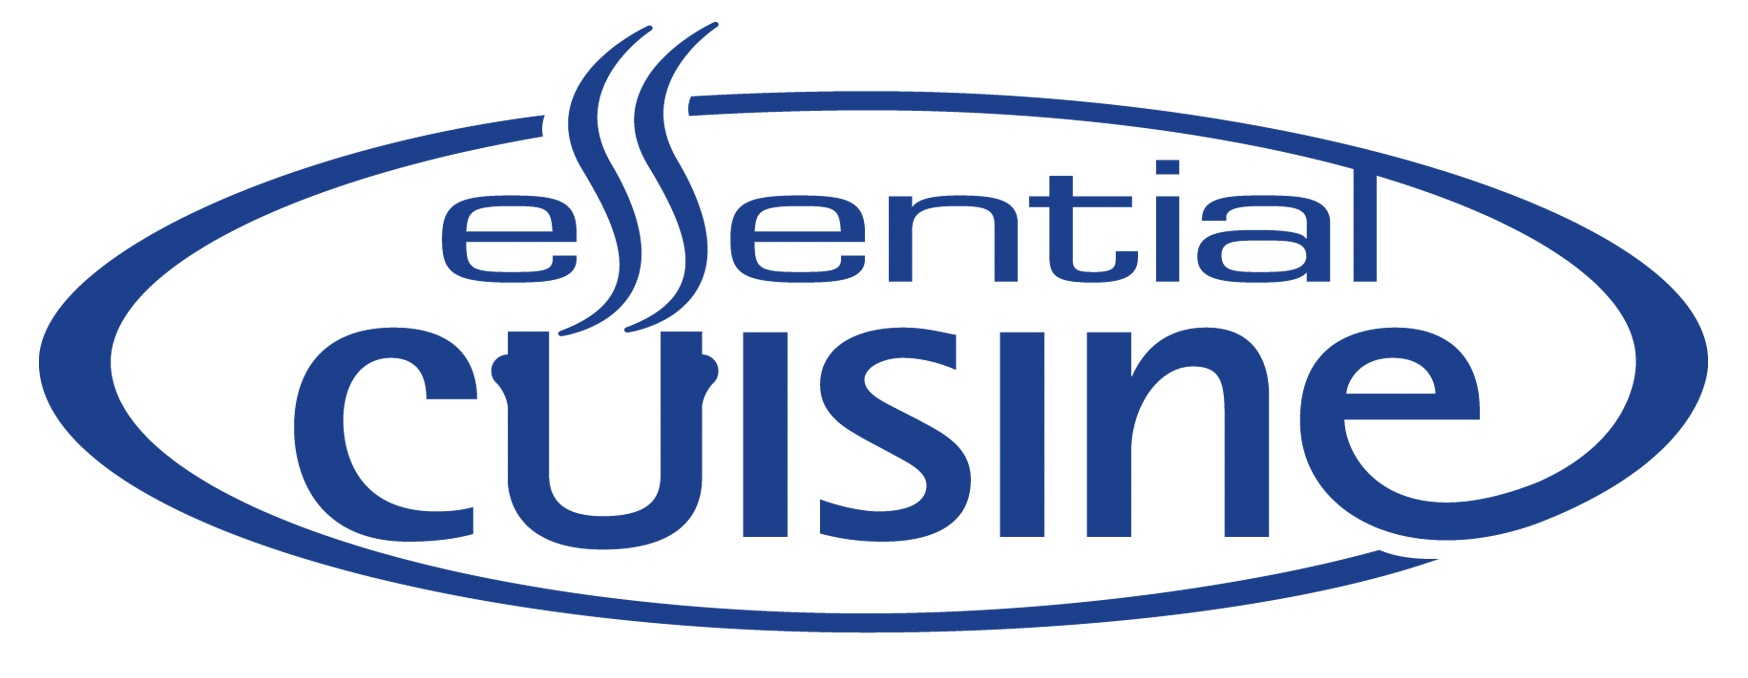 Essential Cuisine logo nostrap